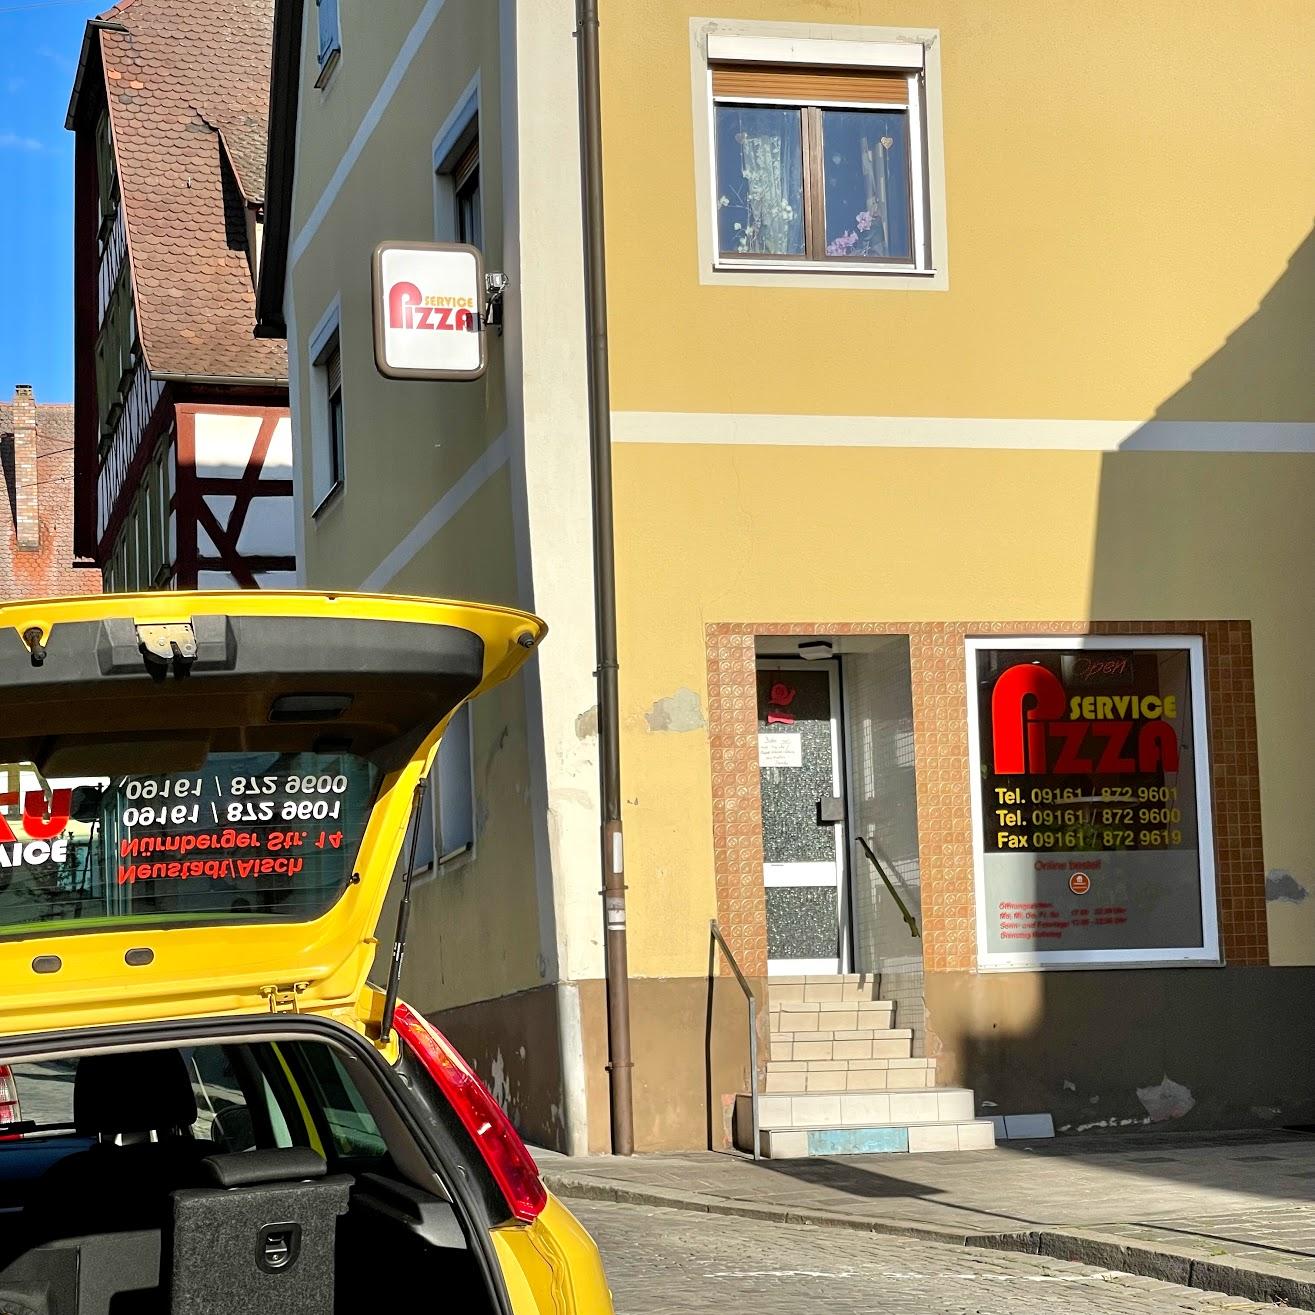 Restaurant "Pizza Service" in Neustadt an der Aisch